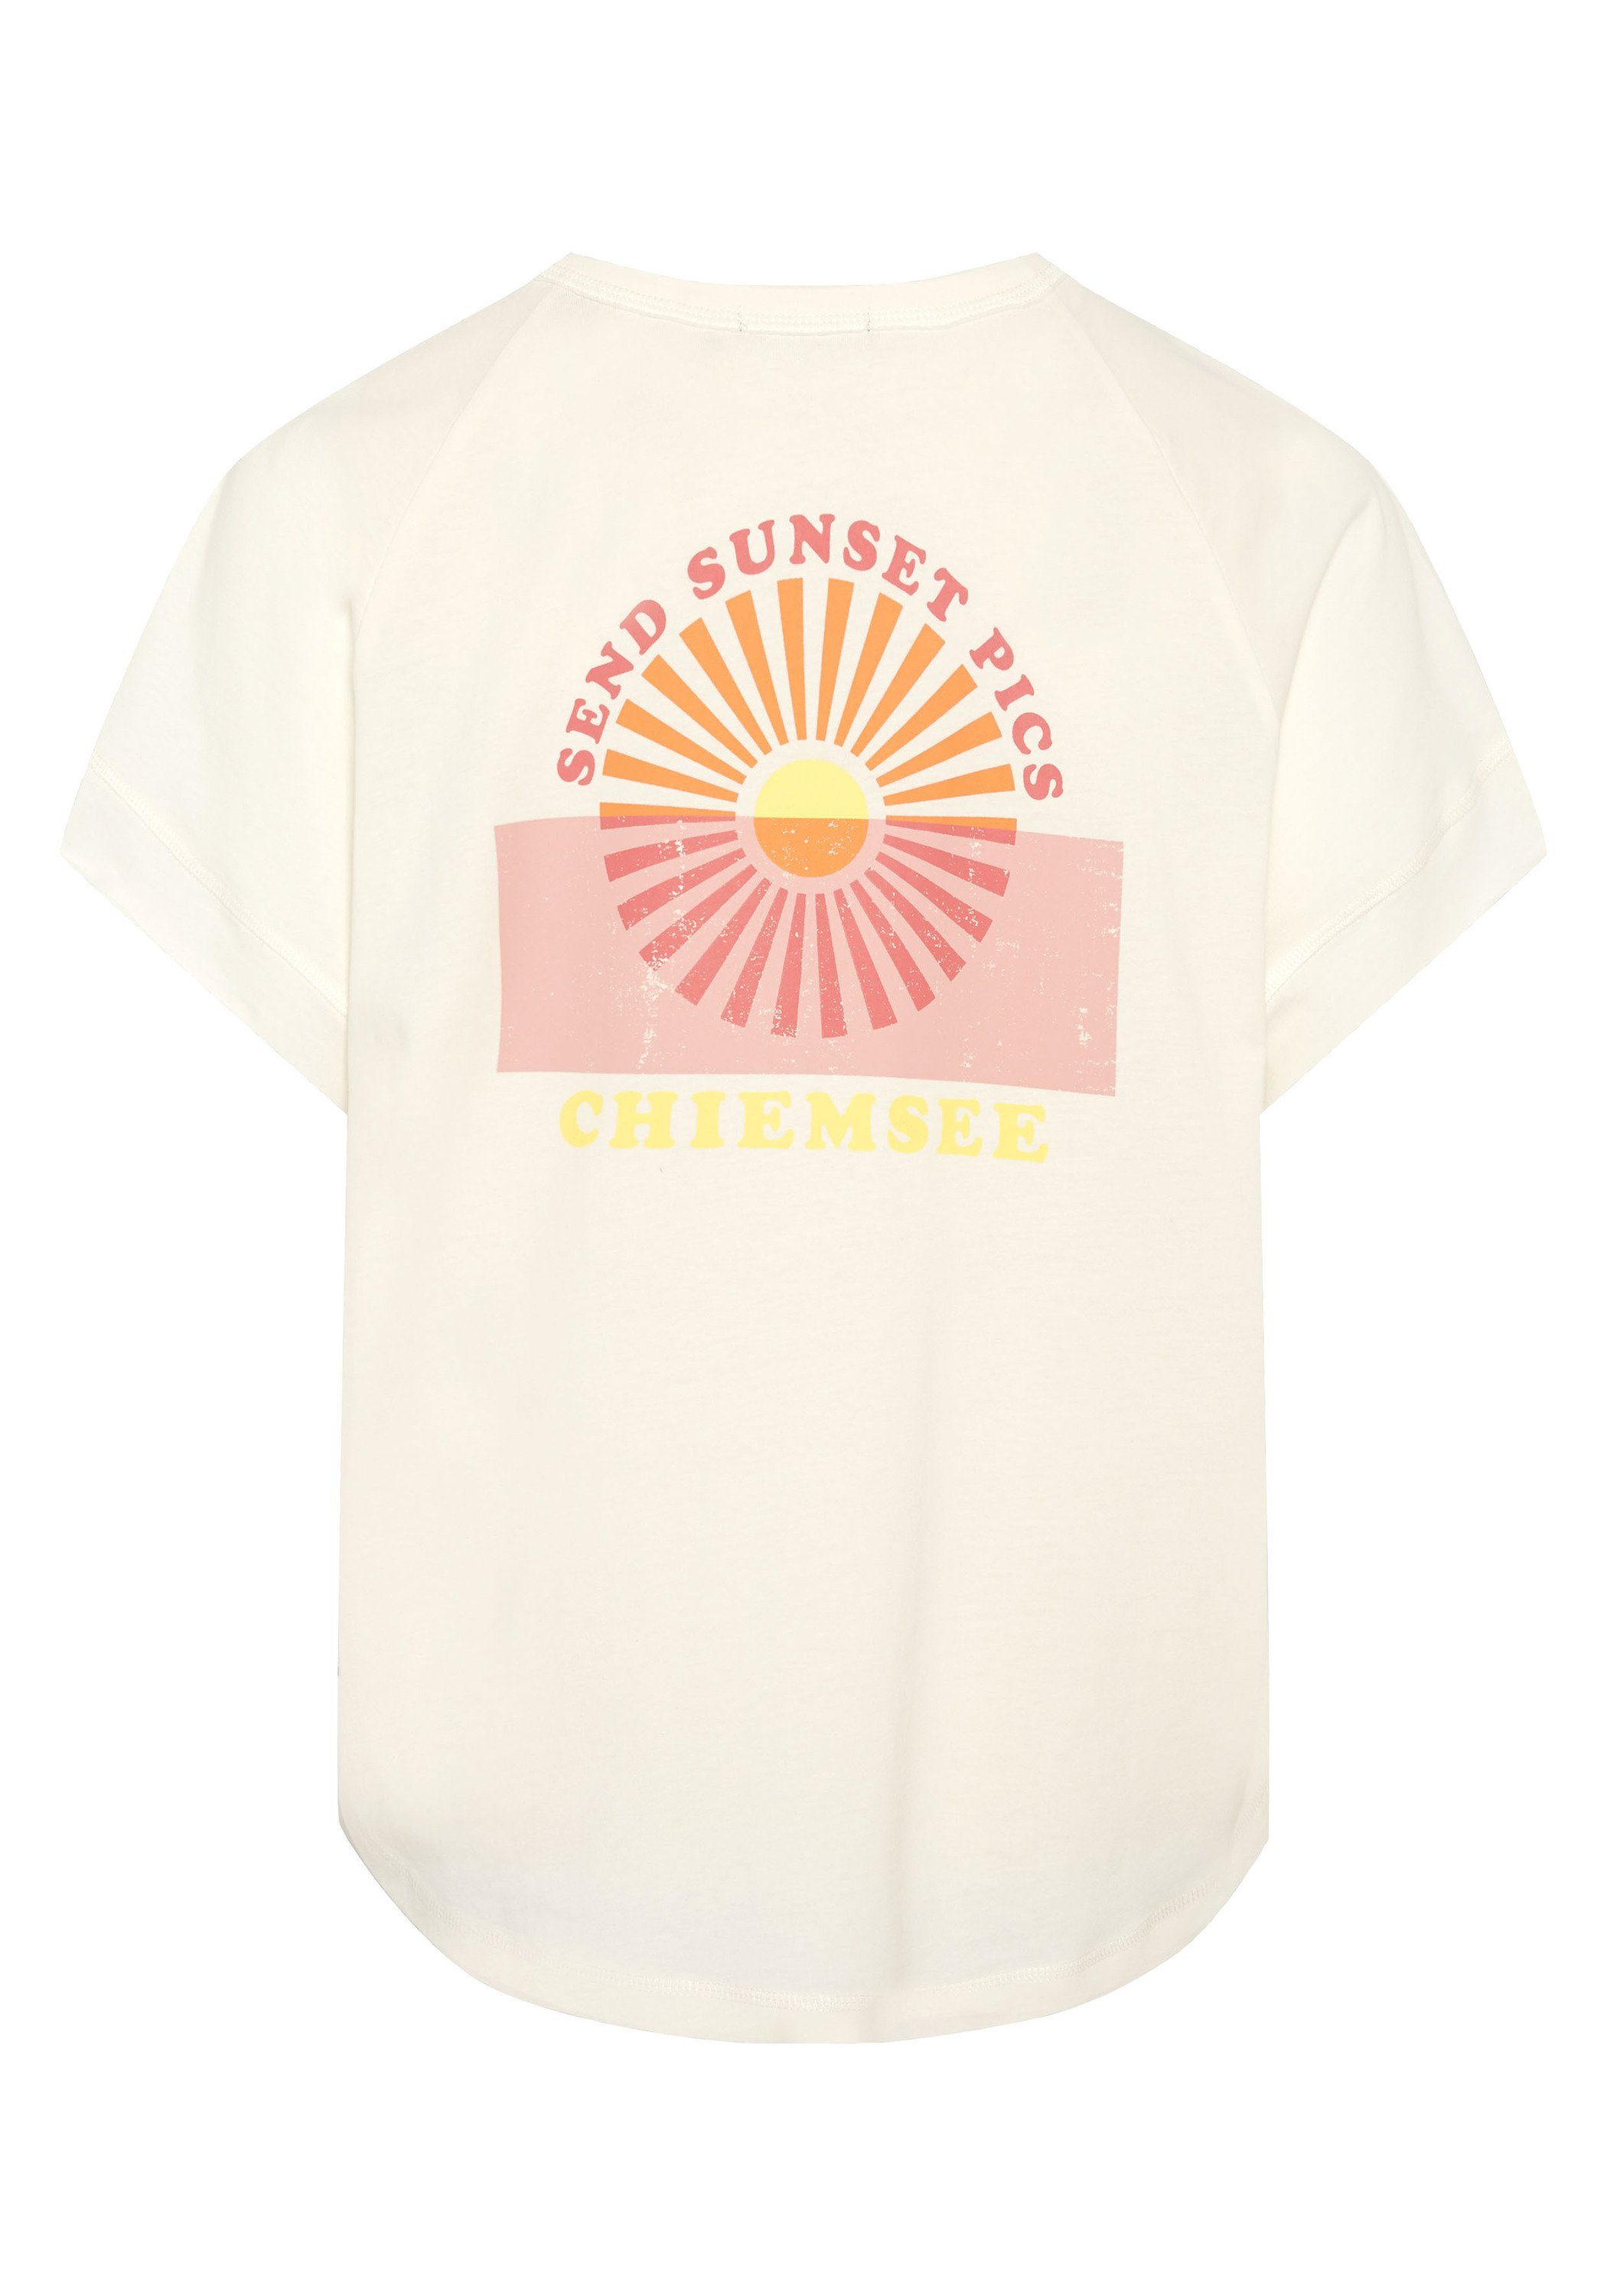 Shirt 1 11-4202 in Vintage-Optik Star Chiemsee White Print-Shirt